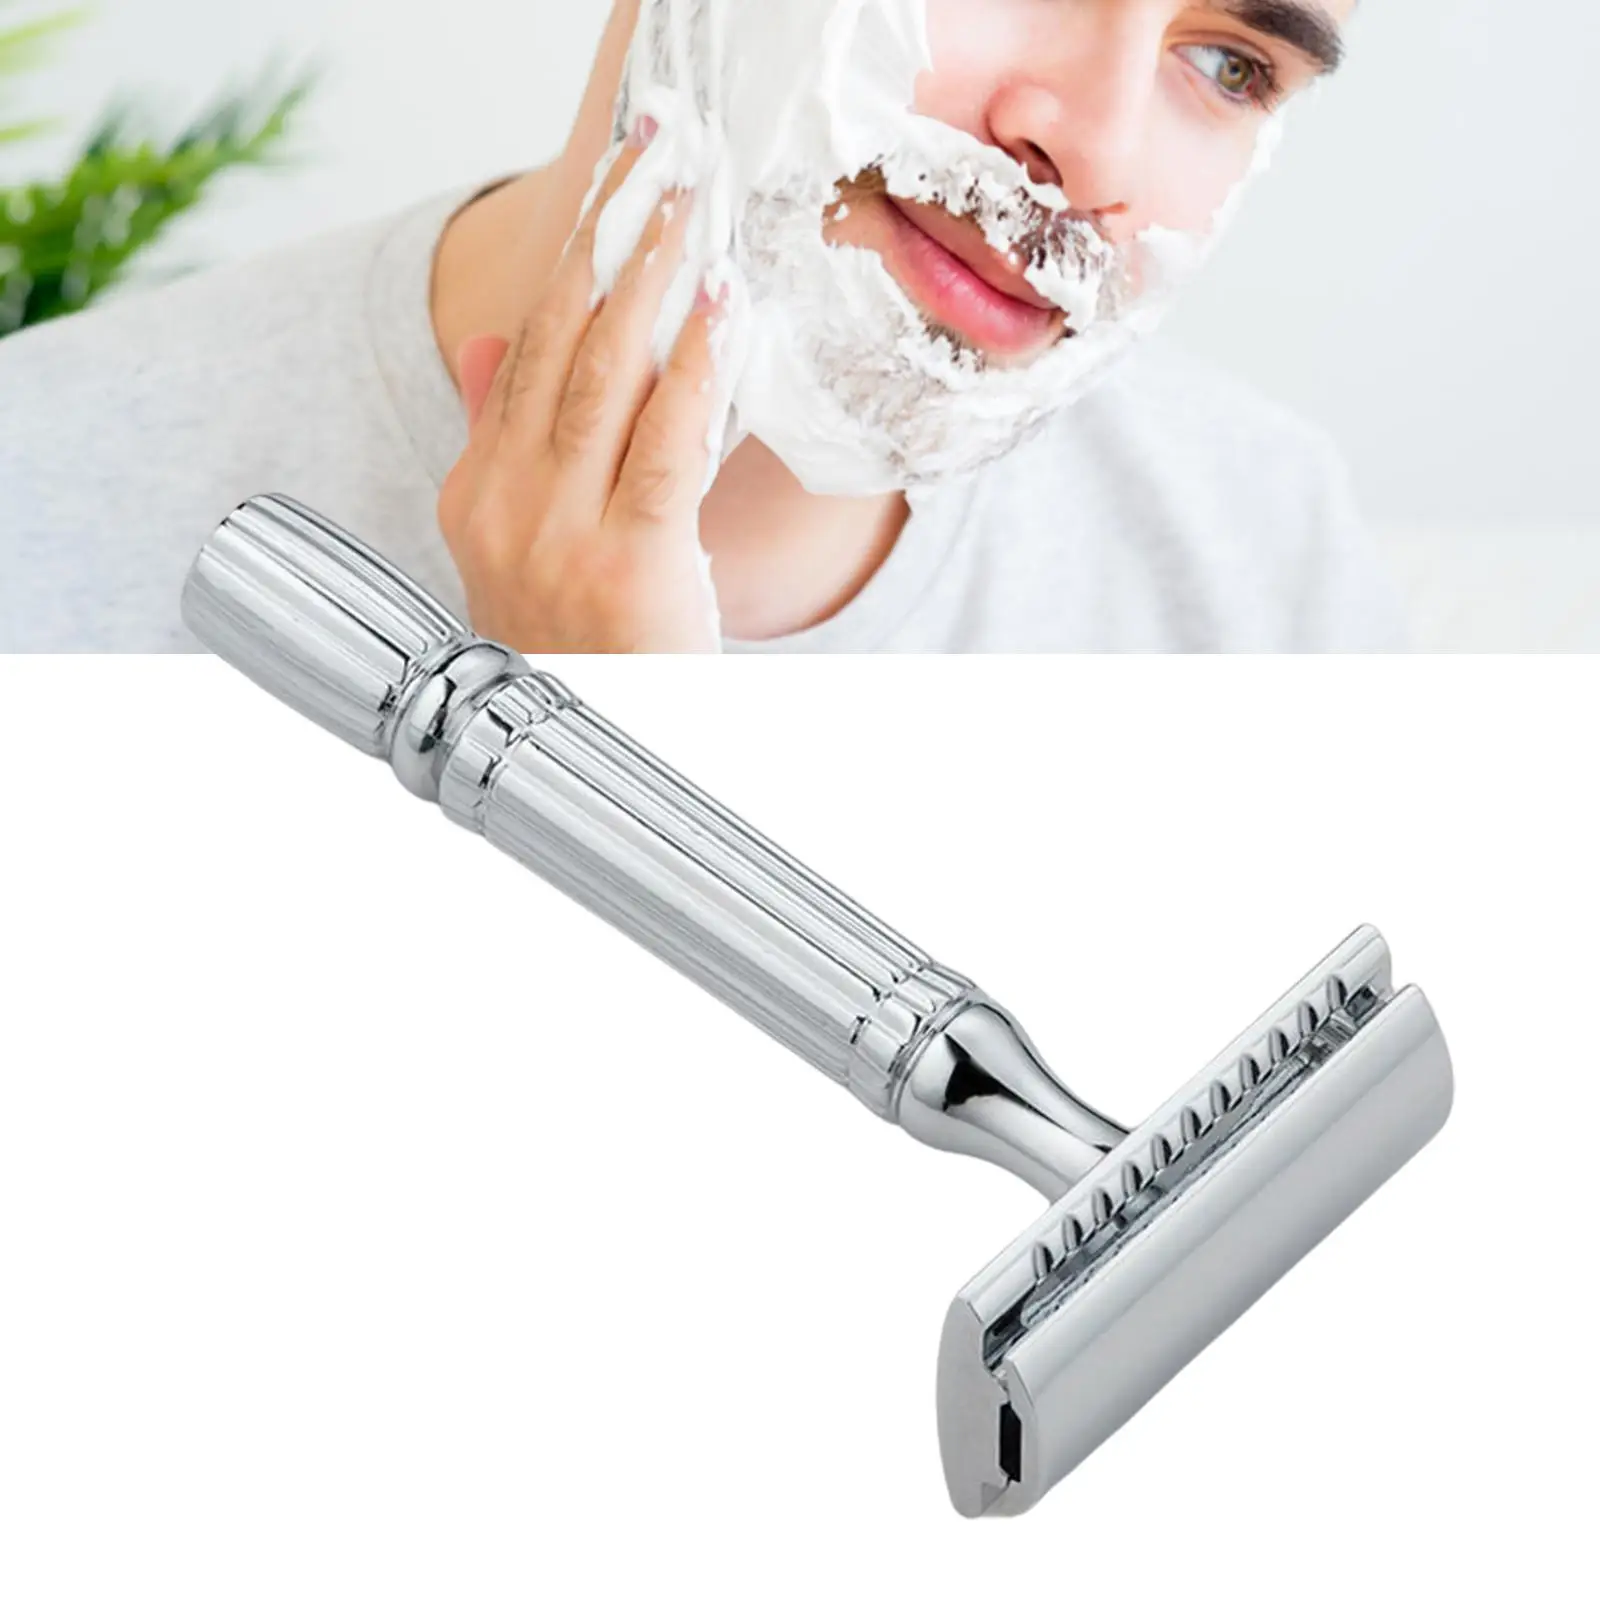 Double Edge Safety Razor Long Handle Beard Shaving Beard Shaver for 5 Shaving Blades